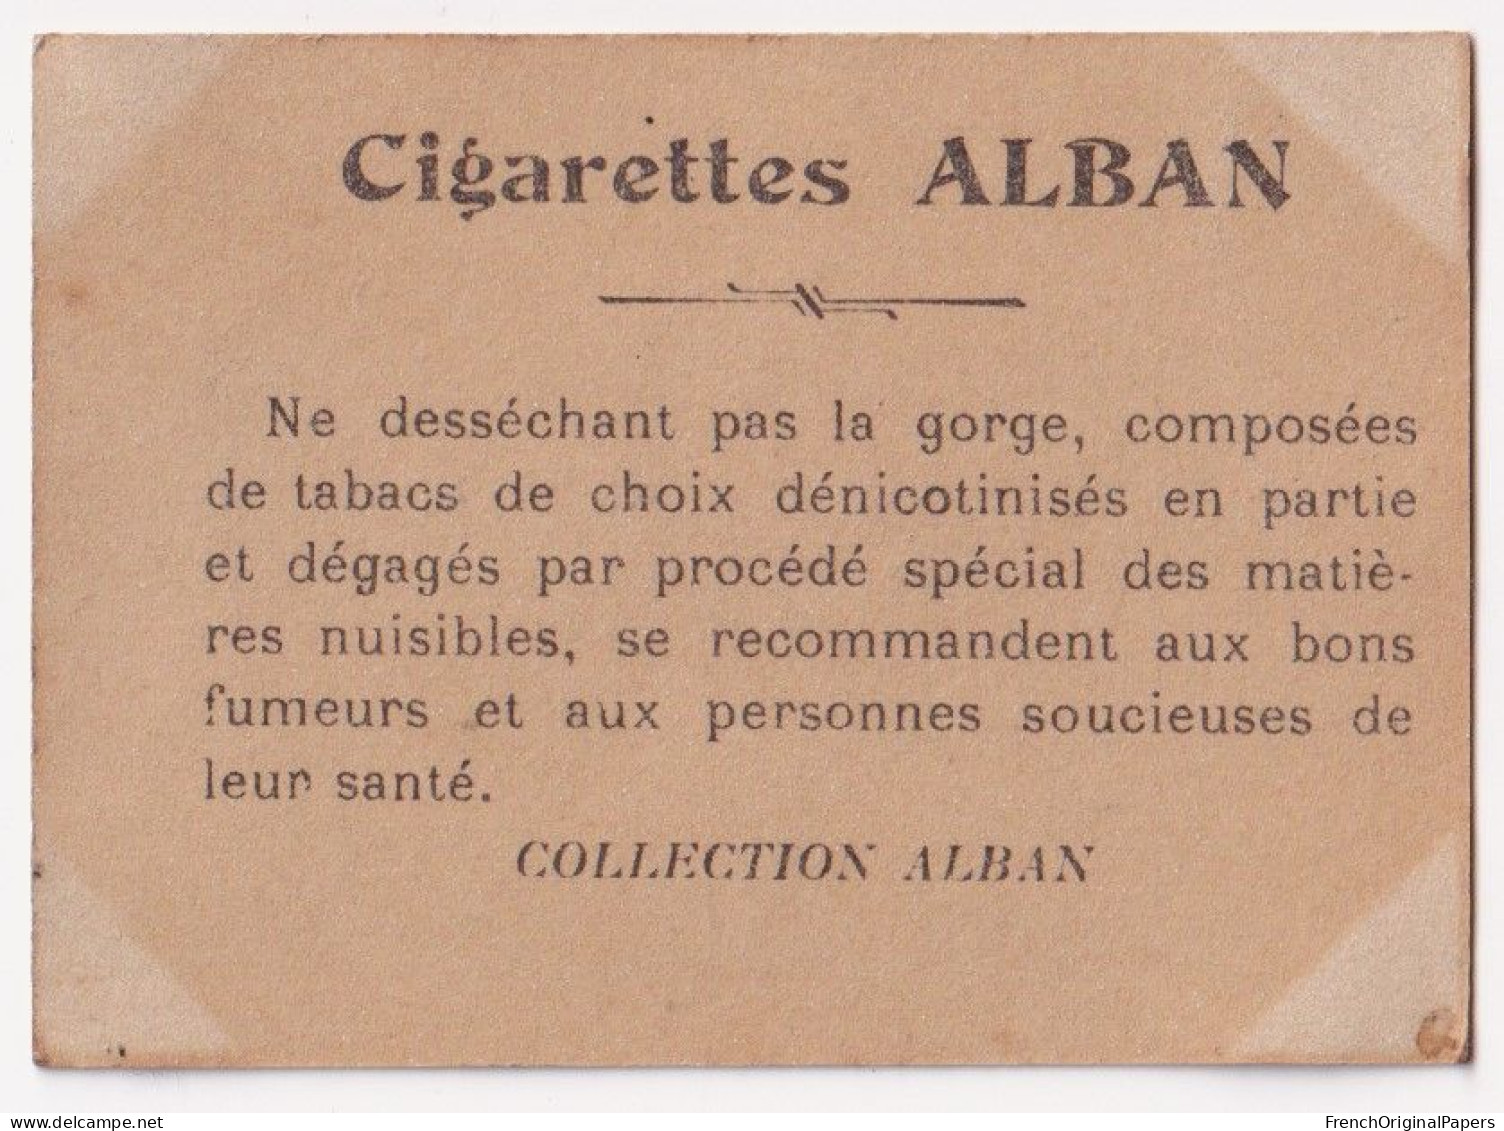 Otéro - Cigarettes L. Alban 1910 Photo Femme Sexy Pin-up Vintage Artiste Cabaret Paris Bône Danse Danseuse A62-19 - Other Brands